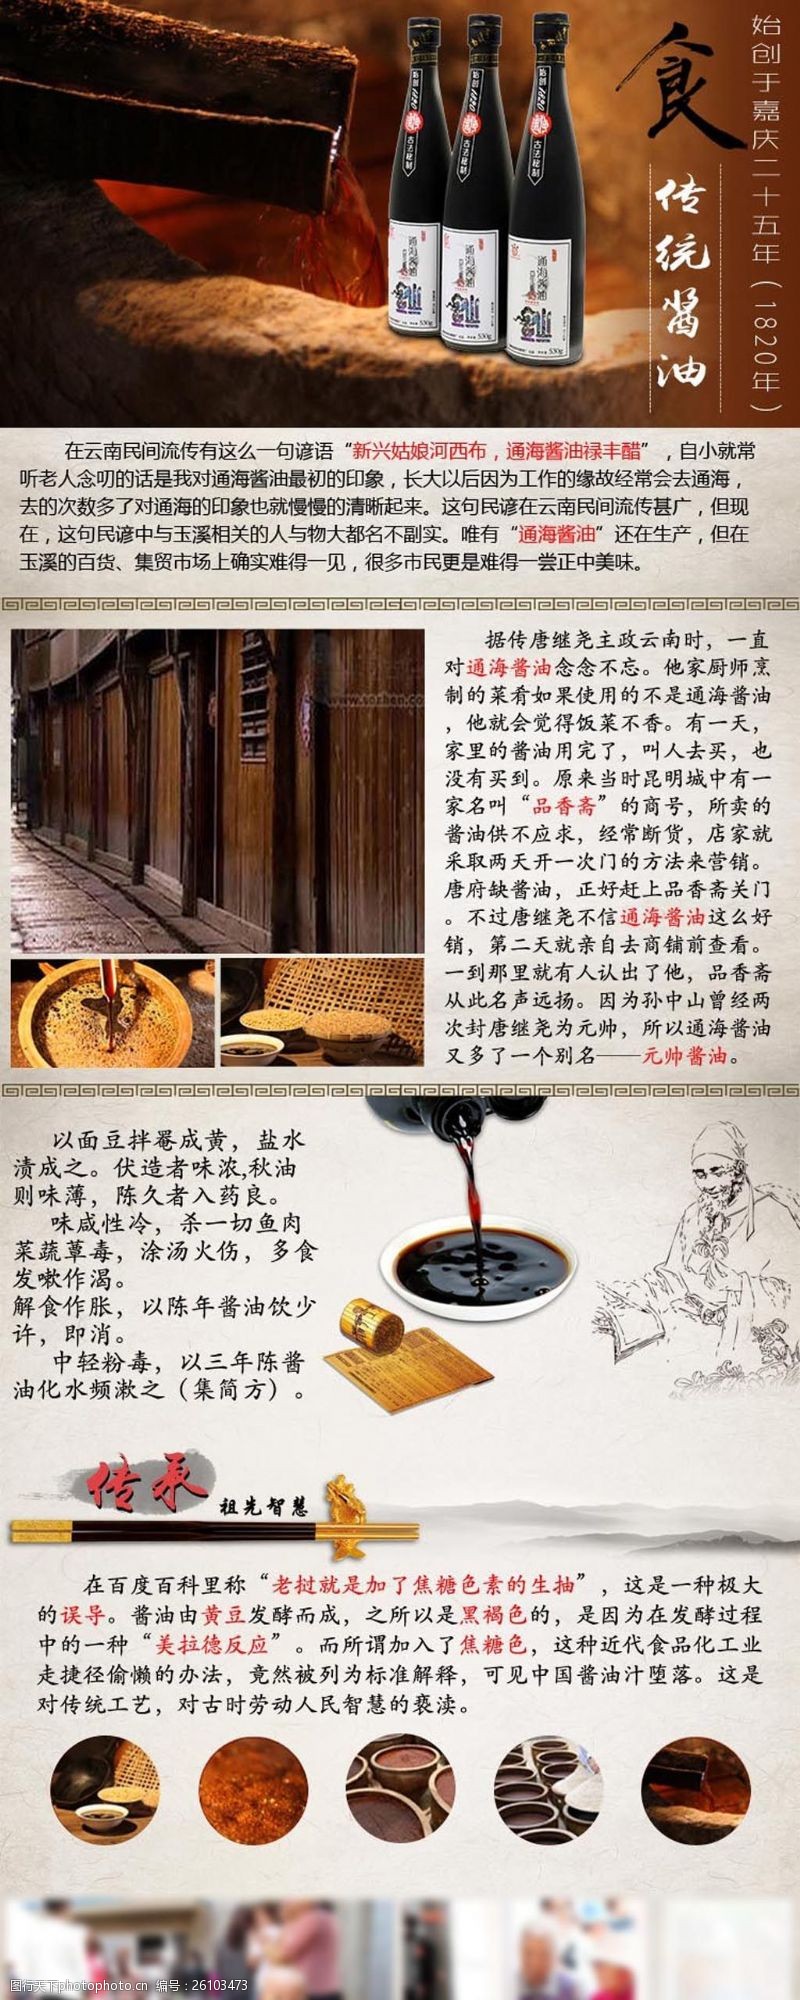 云南美食酱油详情页图片